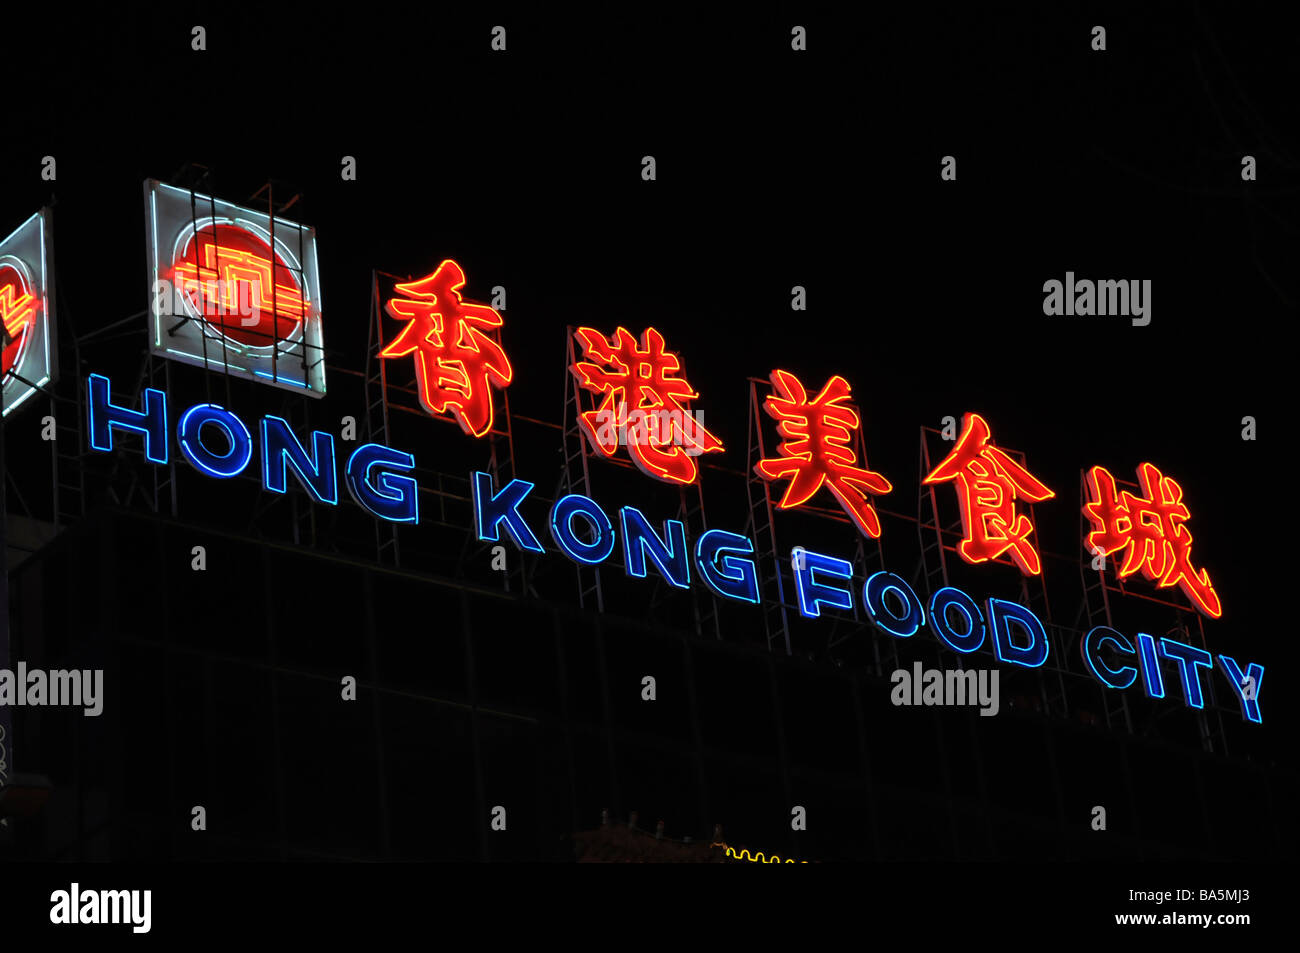 Hong Kong Food City signo de neón Foto de stock